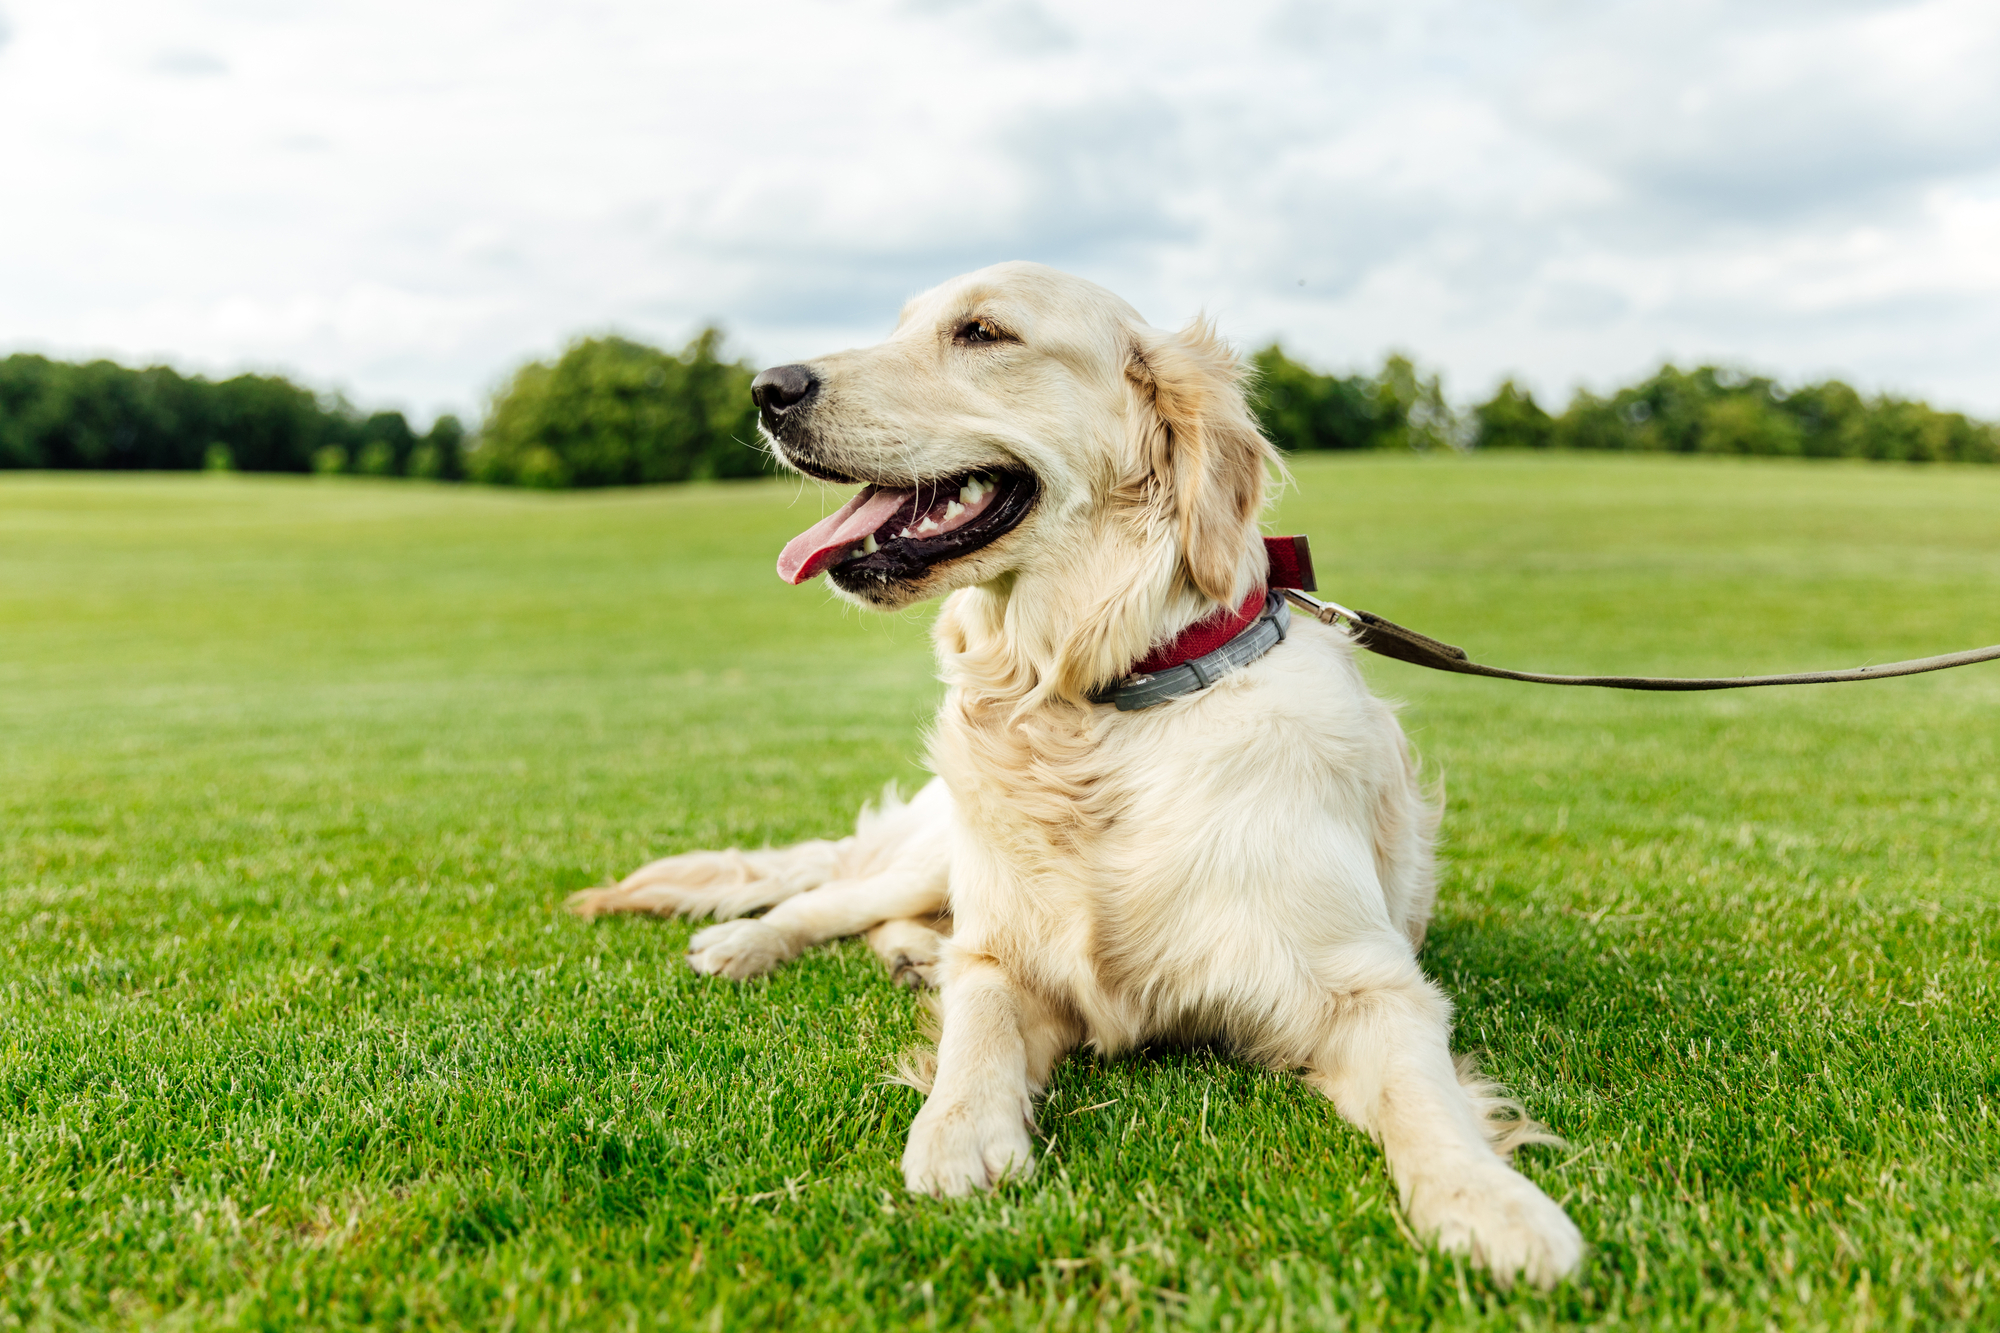 Golden retriever dog on grass